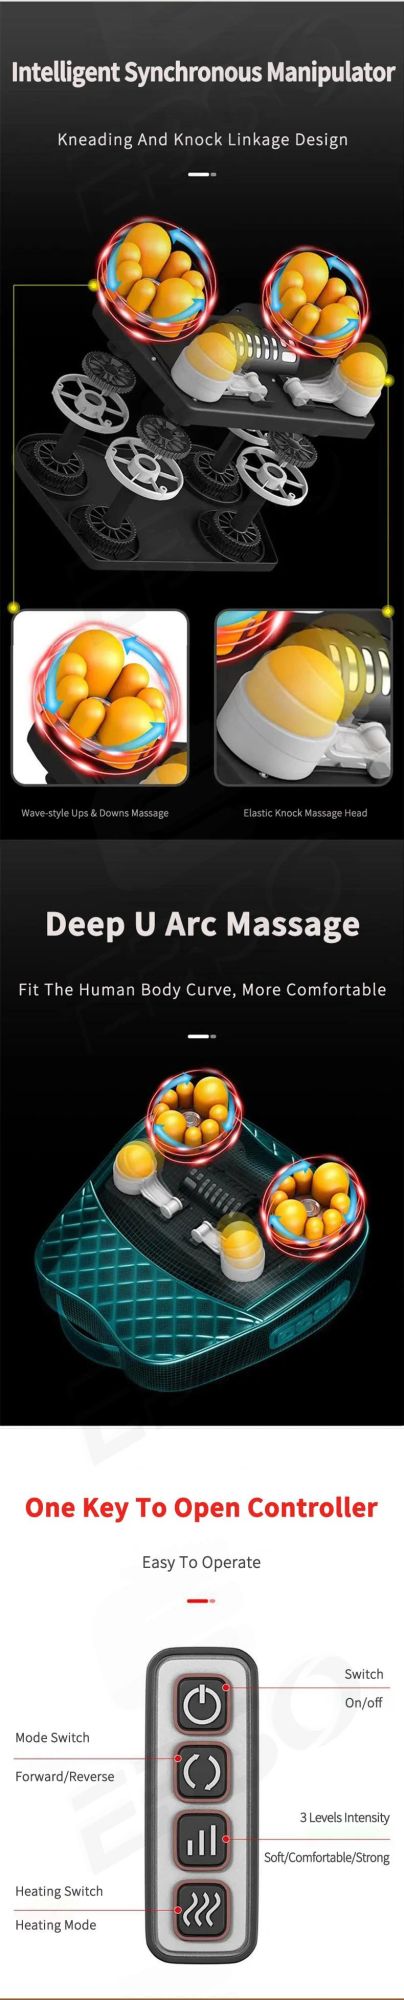 Electric Full Body Care Shiatsu Massage Mattress Thermal Vibration Massage Cushion Mat Pillow Cushion